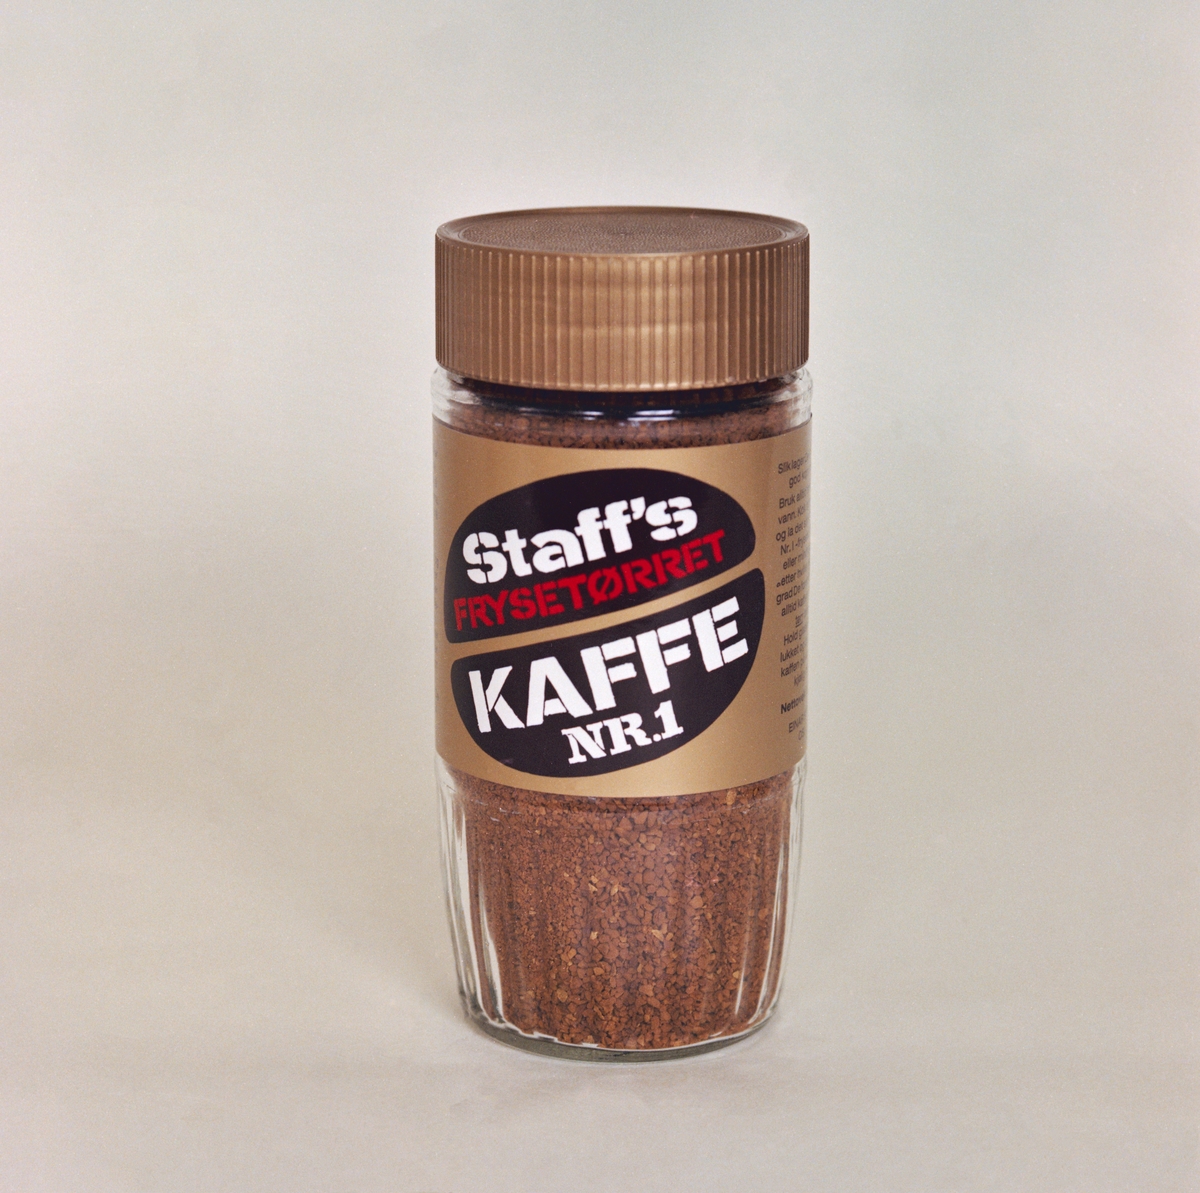 Reklamebilder for kaffegrossist Einar Staff